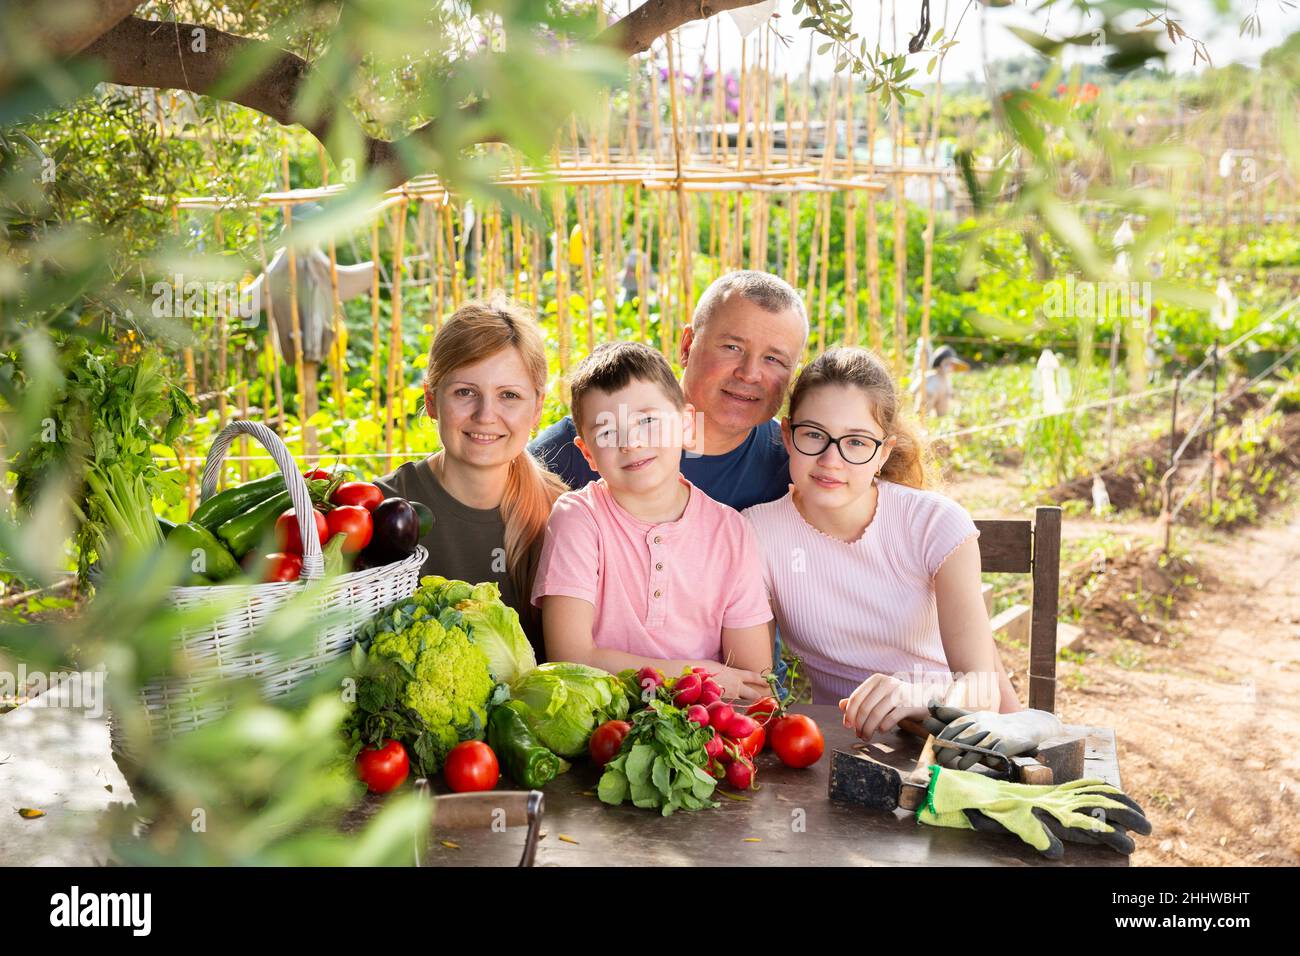 Les parents avec leurs enfants se détendent à table rustique après avoir récolté des légumes Banque D'Images